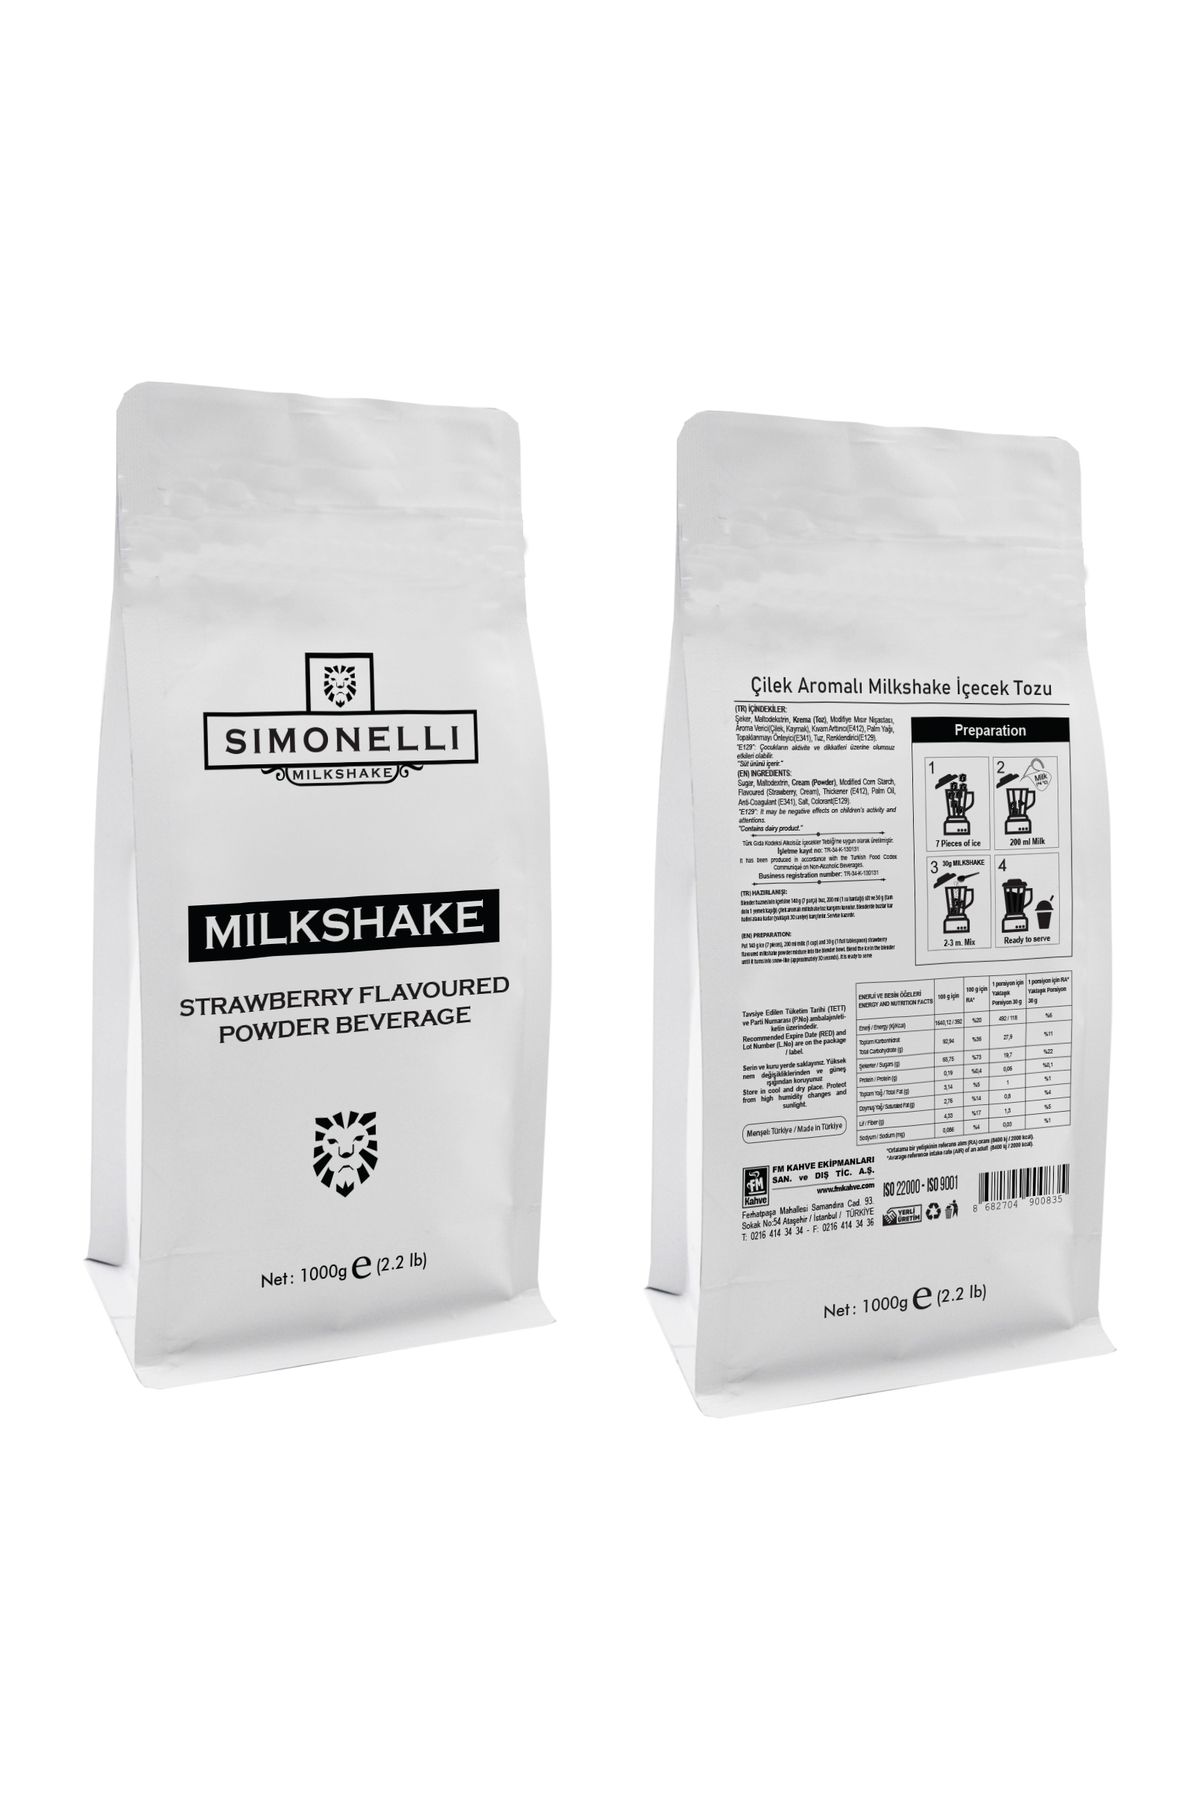 Simonelli Milkshake Çilek Aromalı 1000g Paket